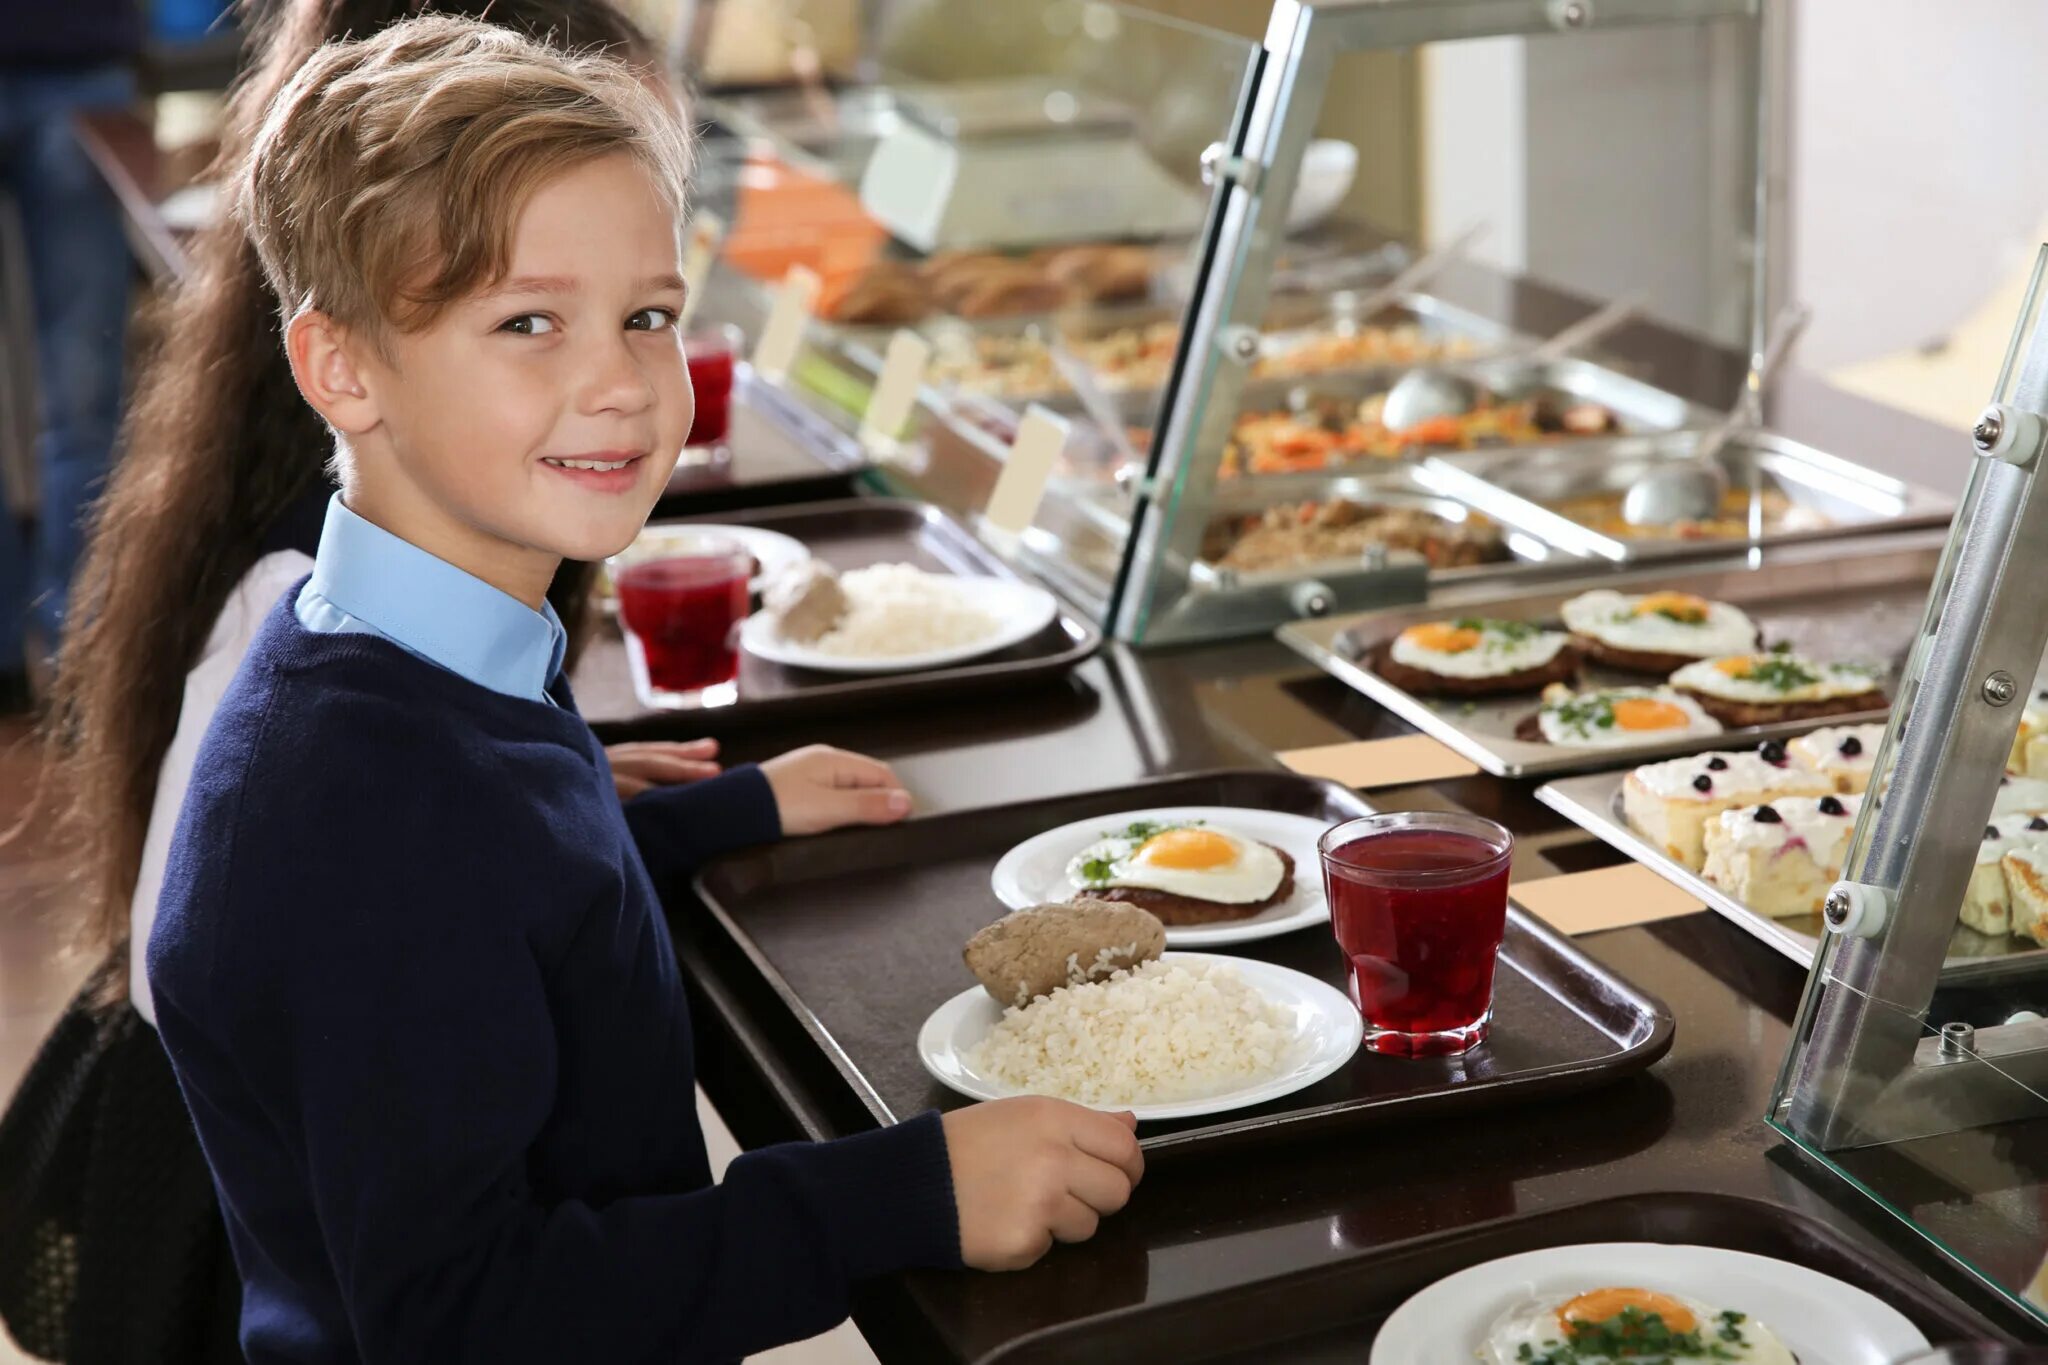 Время обеда в школах. Питание в школе. Обед в школе. Школьники в столовой. Питание в школьных столовых.